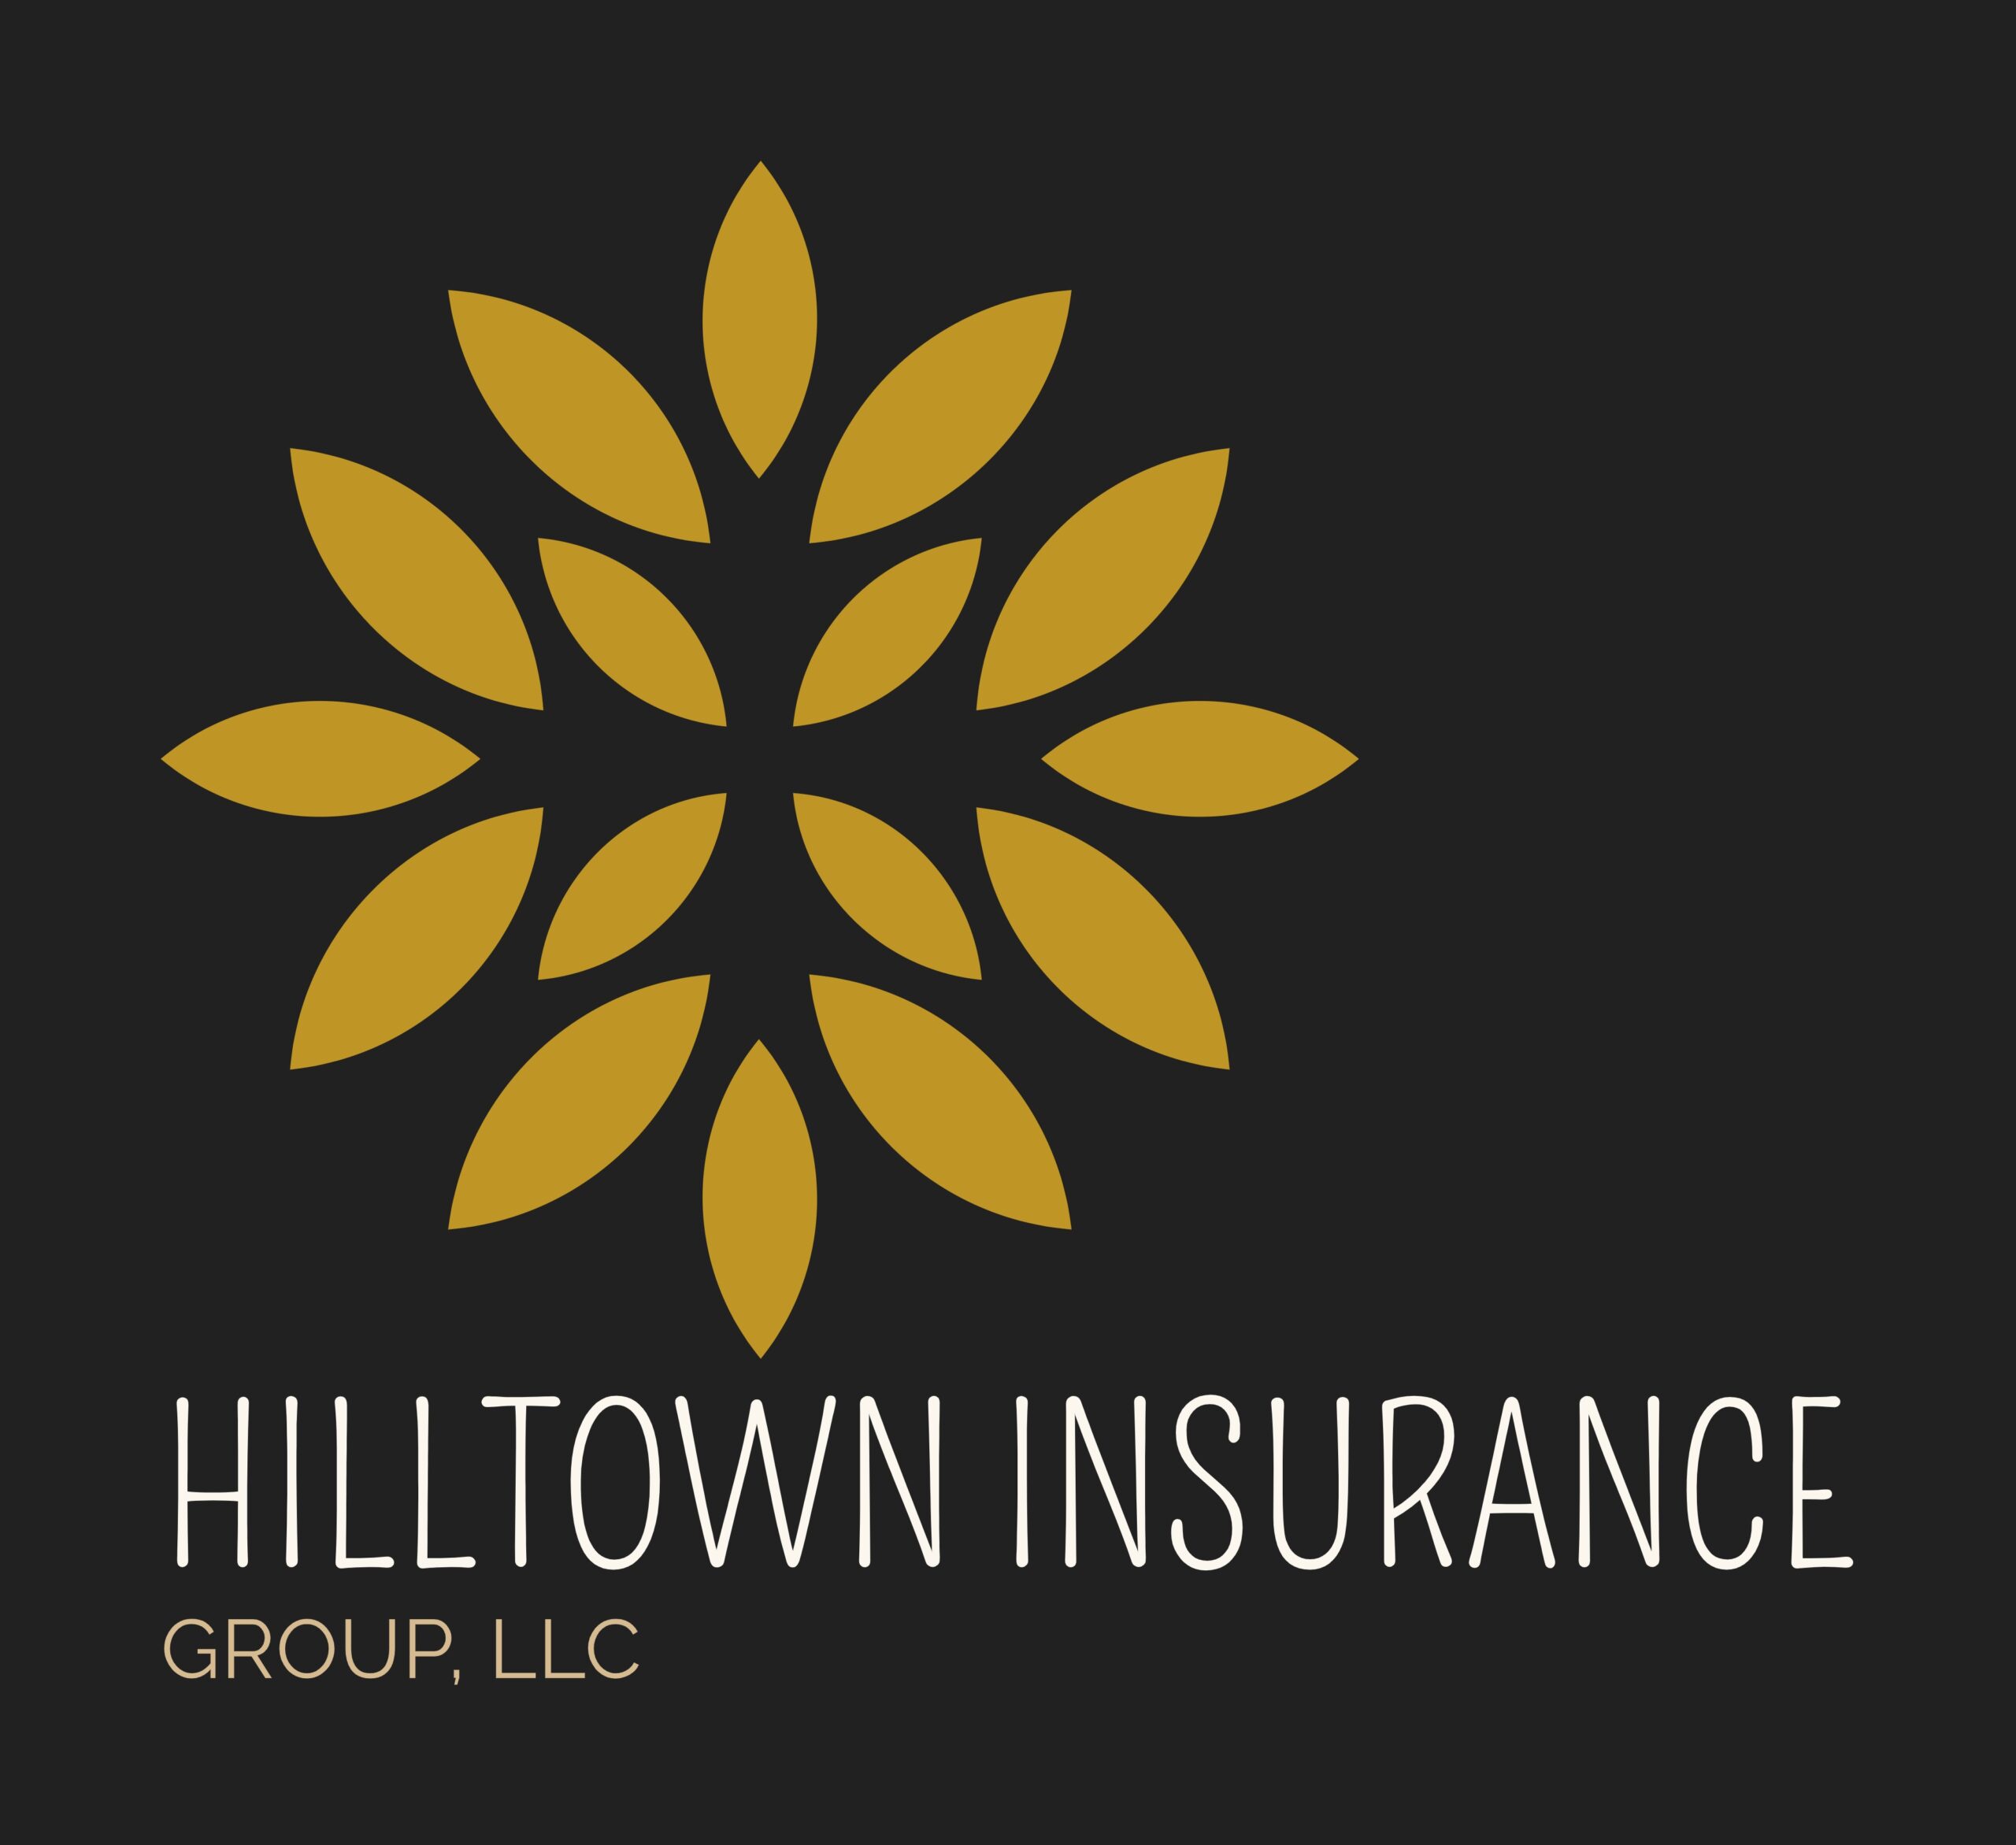 Hilltown Insurance Group, LLC